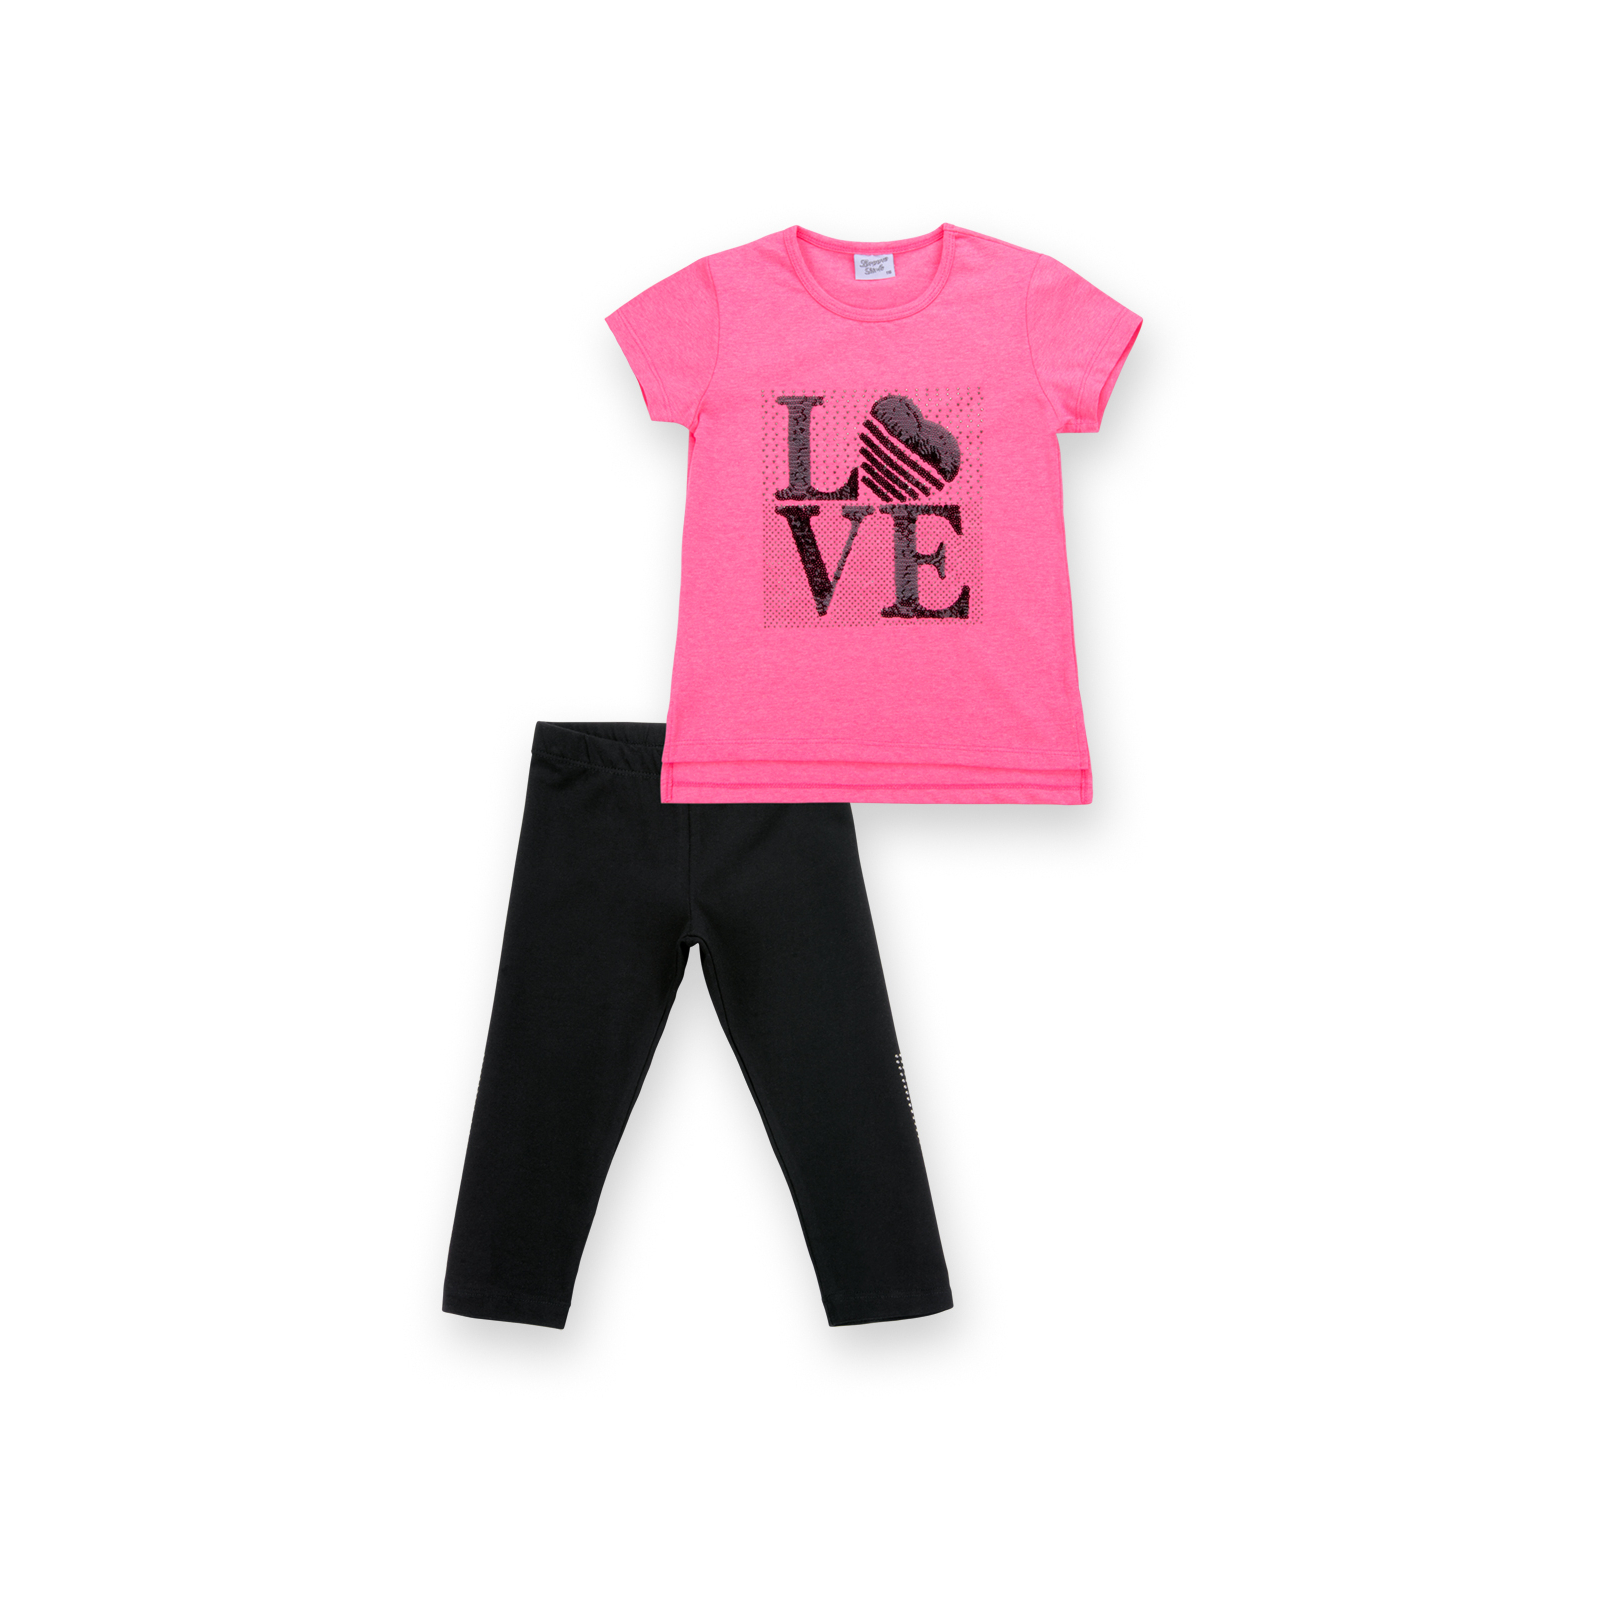 Набор детской одежды Breeze с надписью "LOVE" из пайеток (8307-152G-pink)